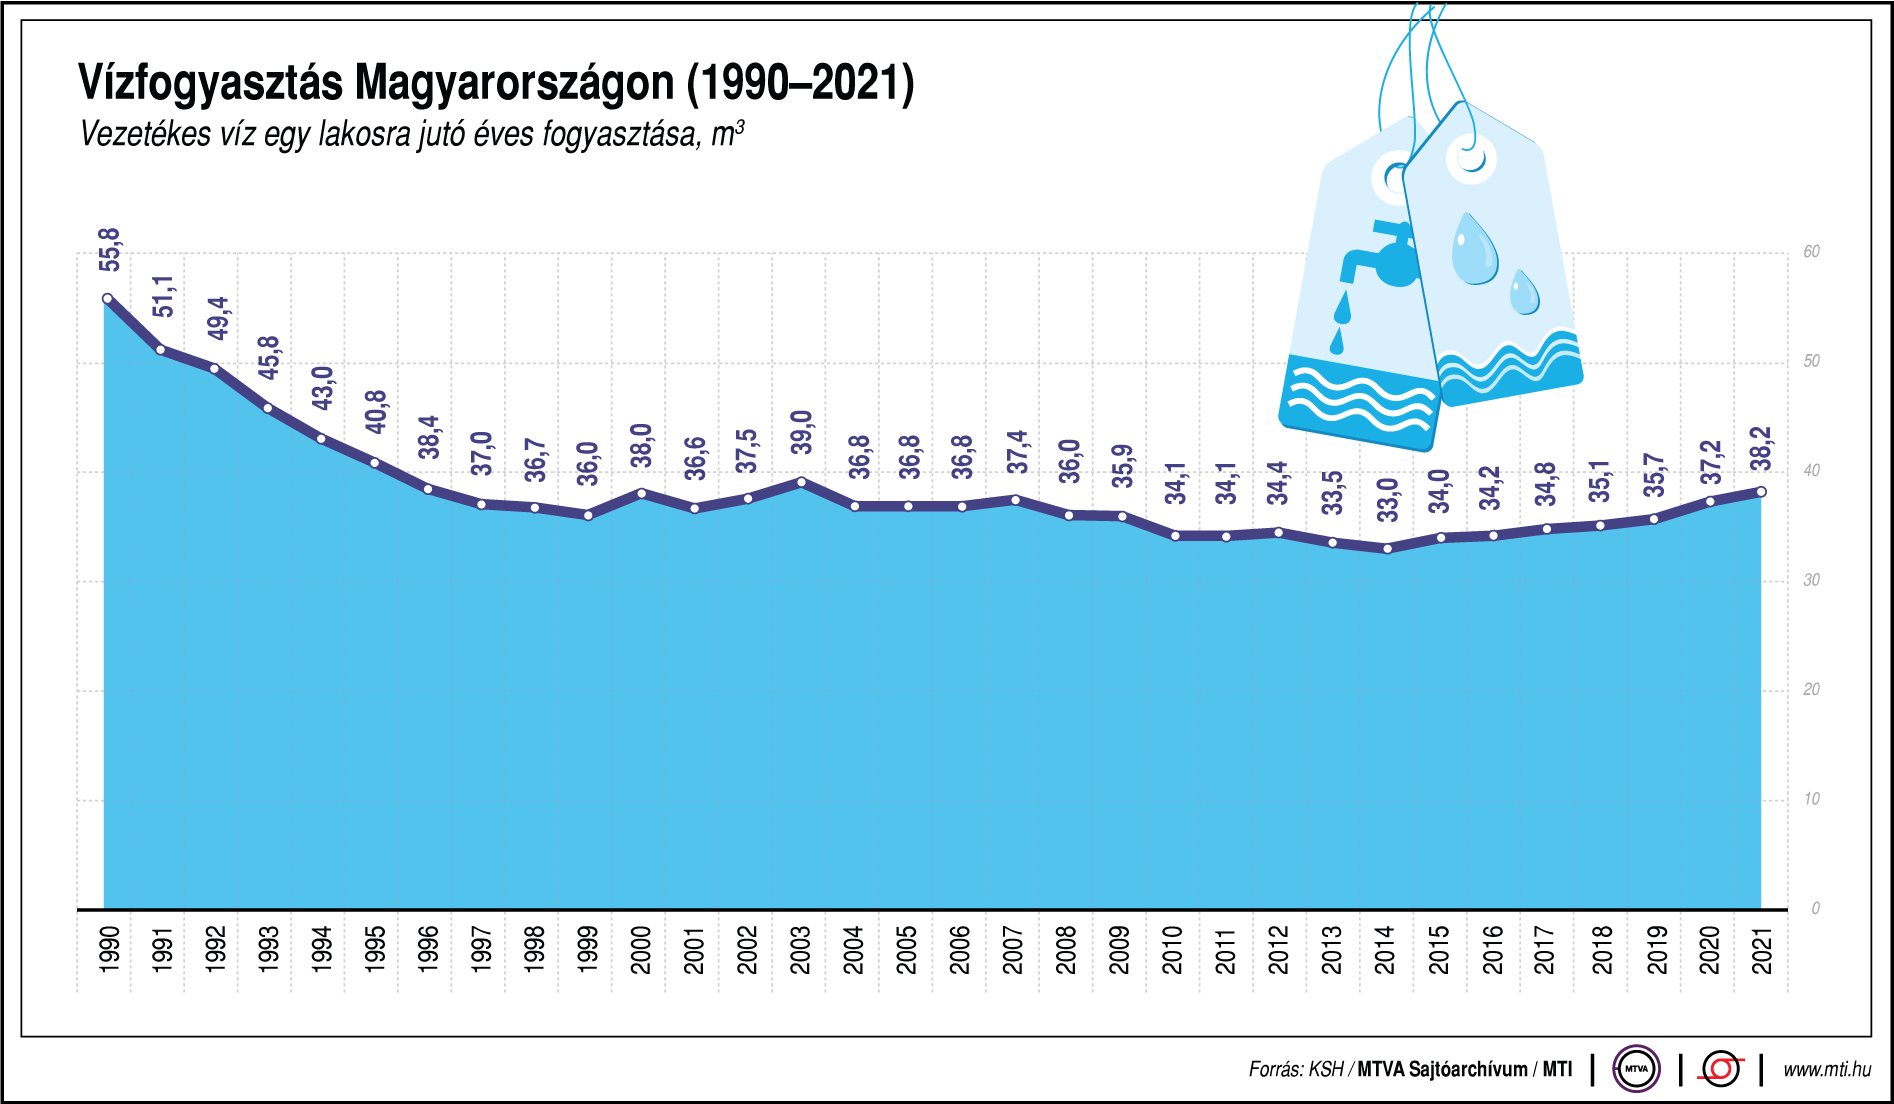 Vízfogyasztás Magyarországon (1990-2021)